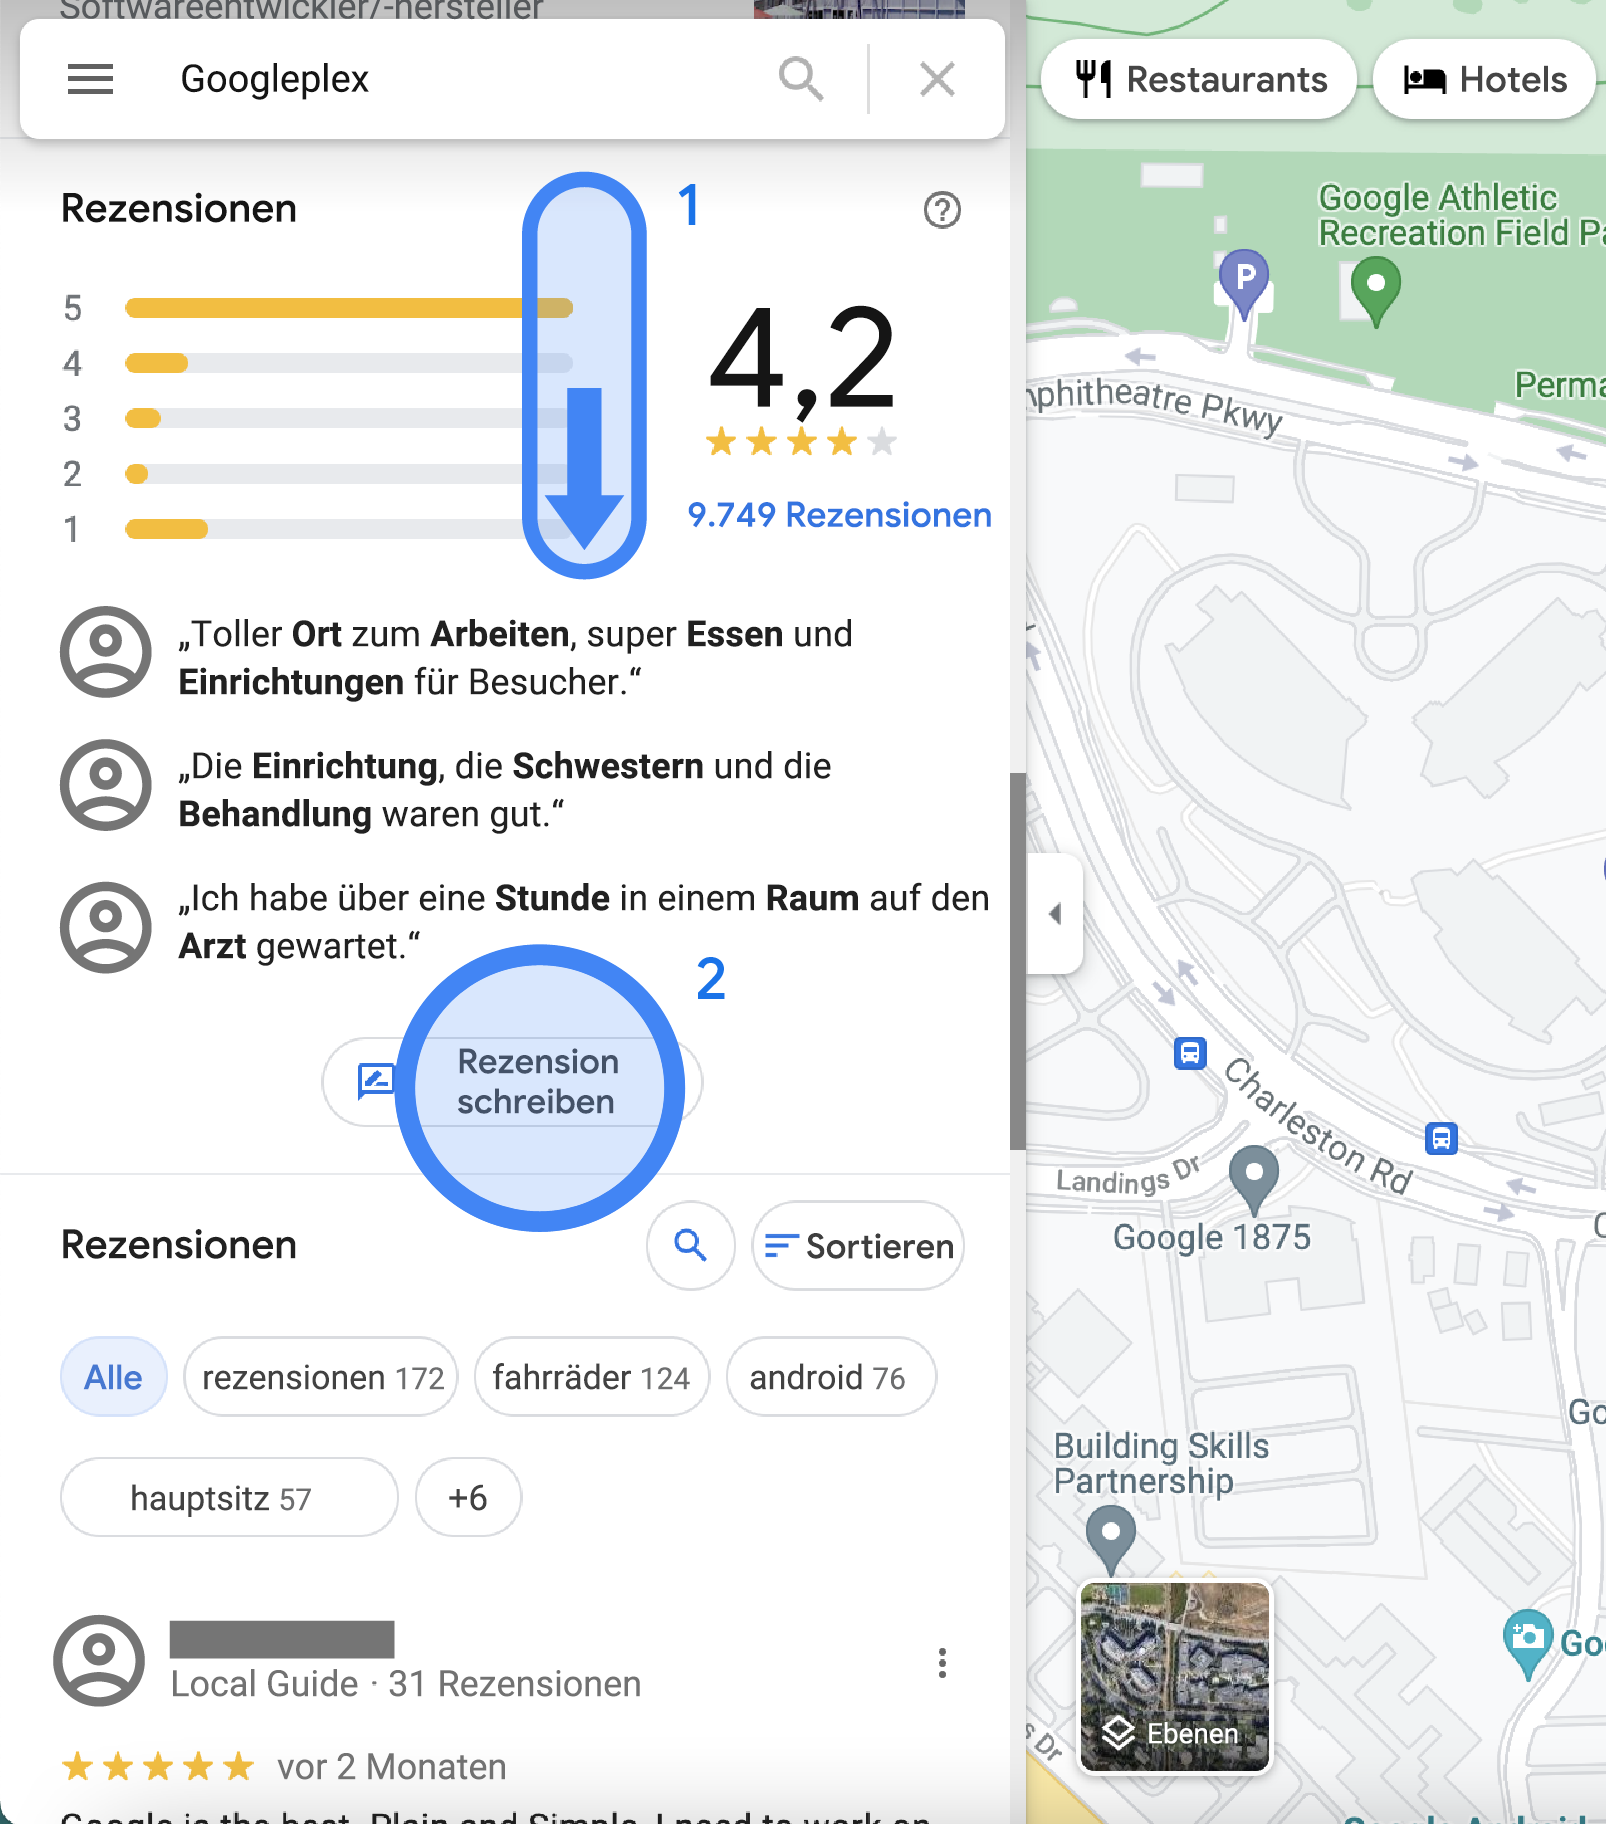 In der linken Seitenleiste von Google Maps wird eine Übersicht der Rezensionen zum Googleplex-Standort angezeigt. Hier sehen Sie die Durchschnittsbewertungen, ausgewählte Rezensionen, die Schaltfläche „Rezension schreiben“ sowie eine Liste aller Rezensionen.